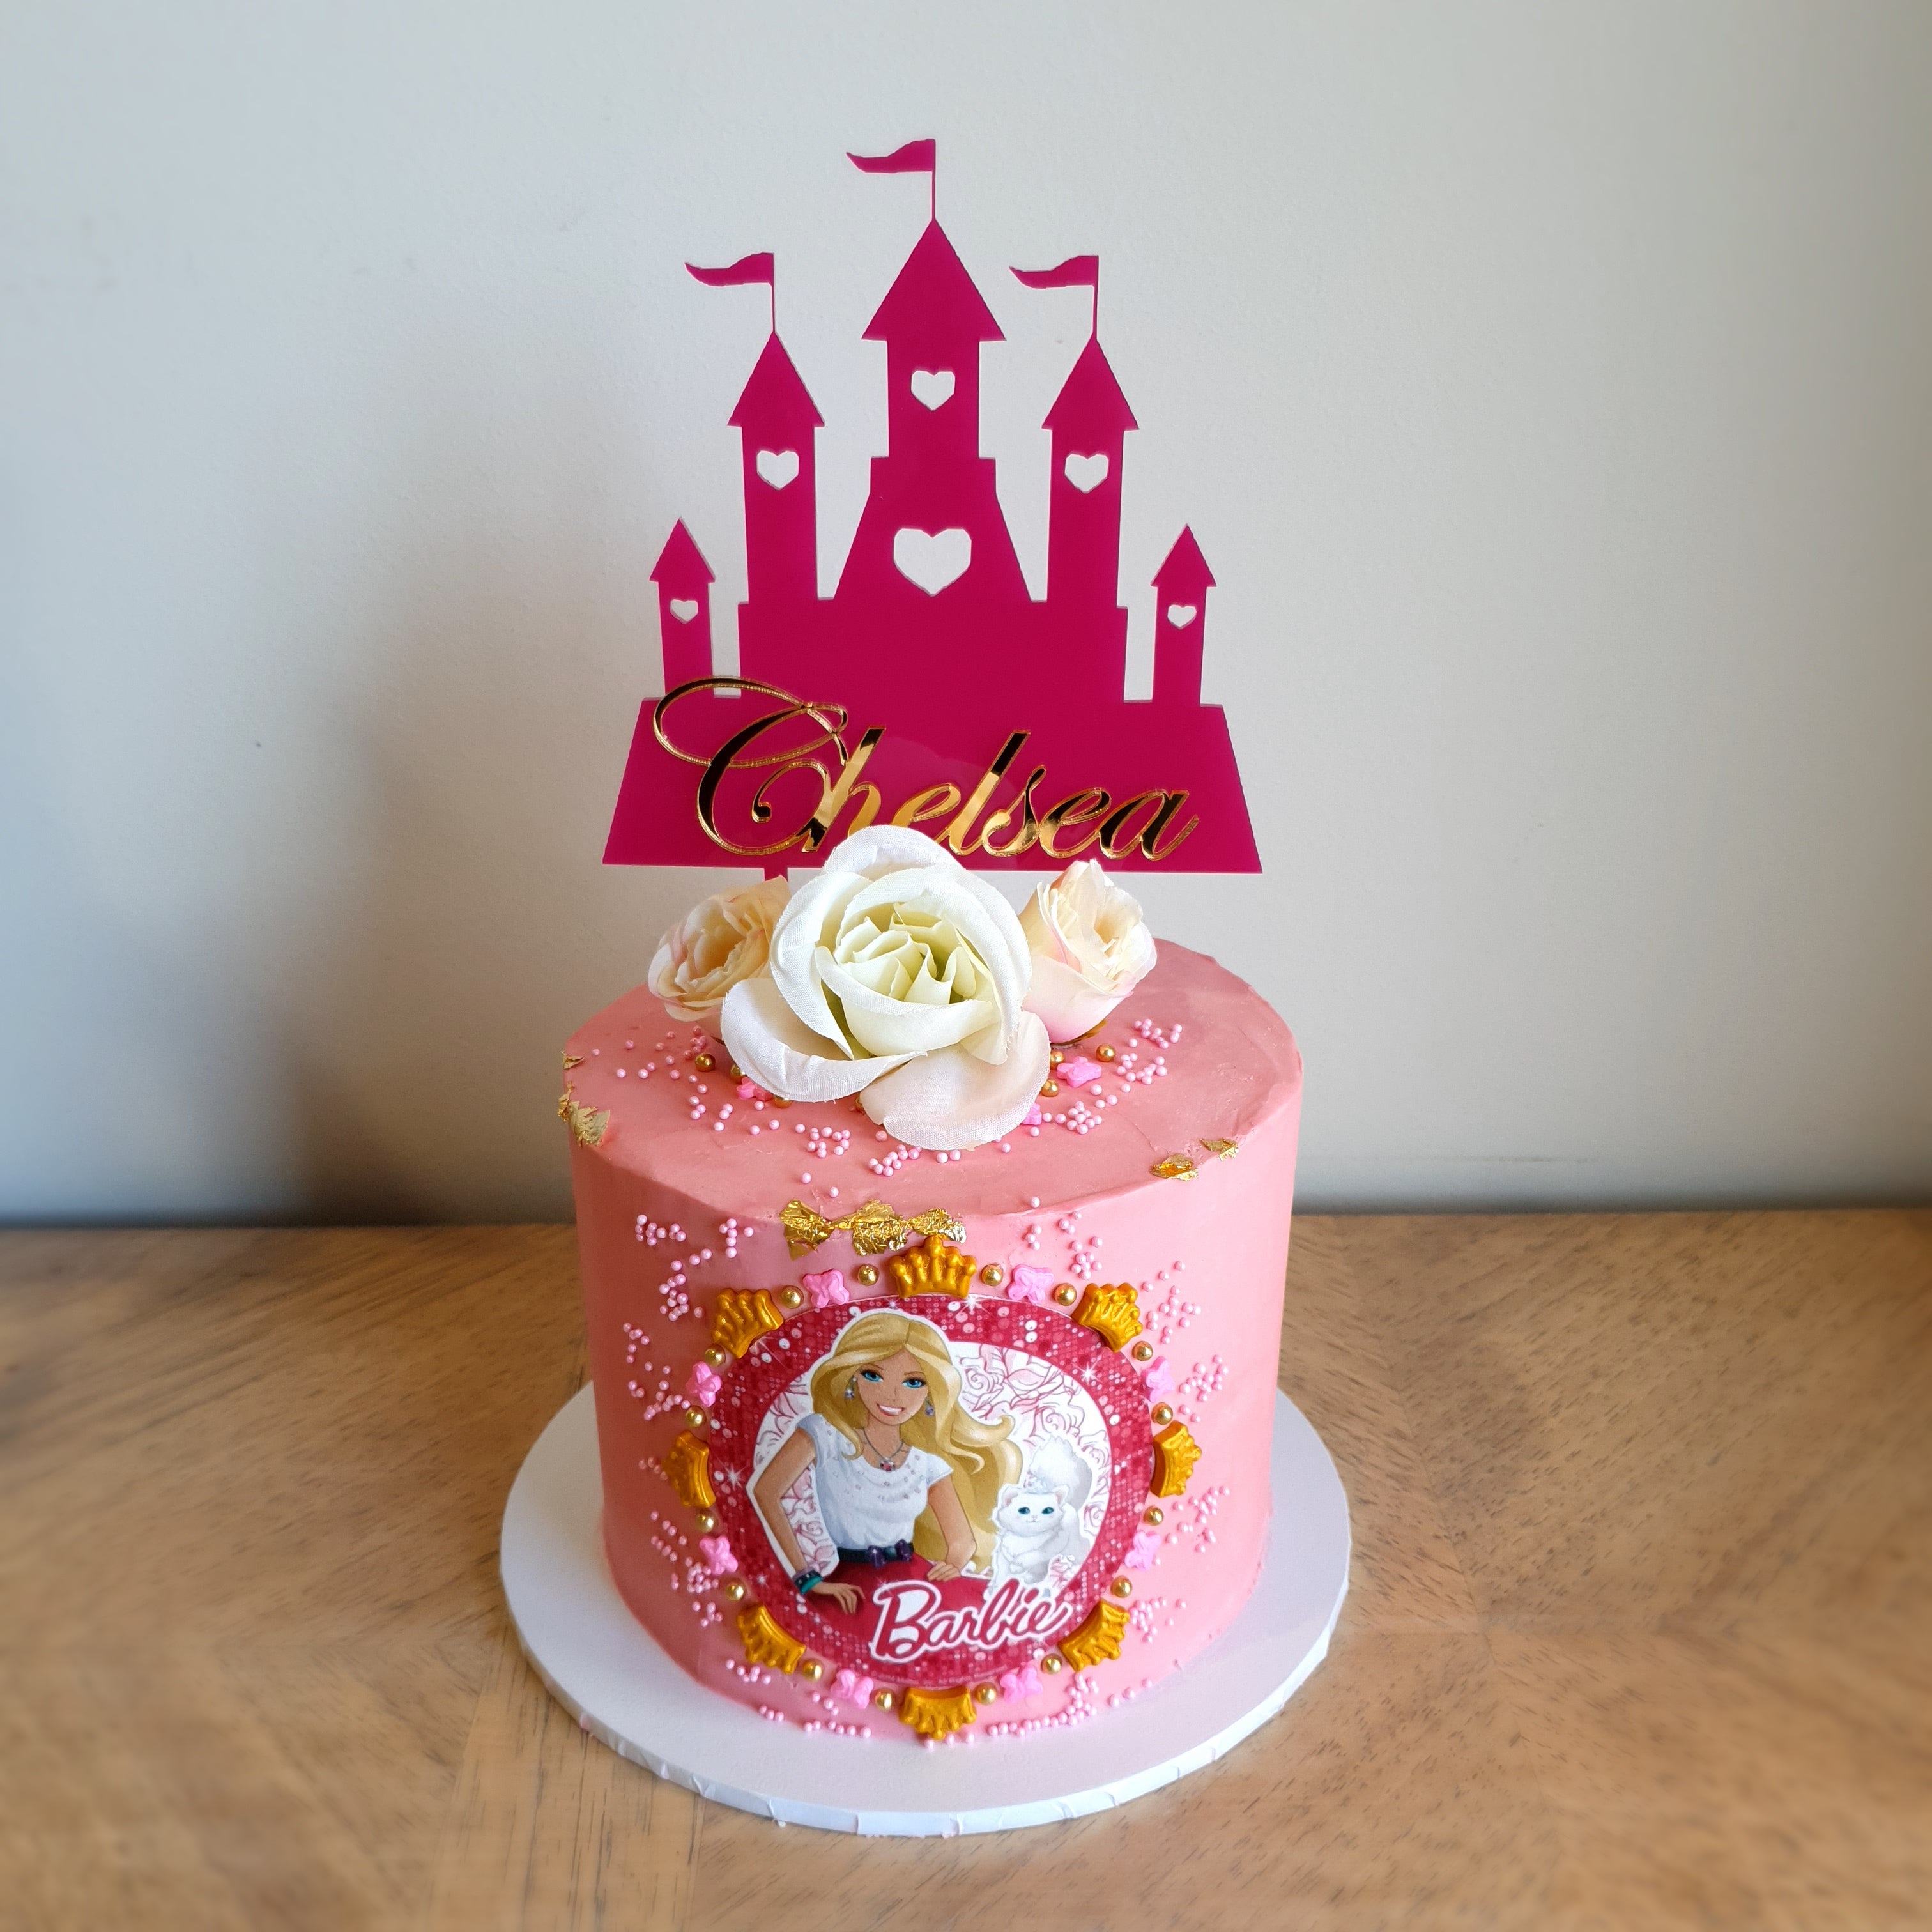 Chelsea Theme Birthday Cake✨ #birthday #cake #chelseacake #birthdaycake # chelsea #cakedecorating #chelseafc #chelseafans #cakedesign… | Instagram